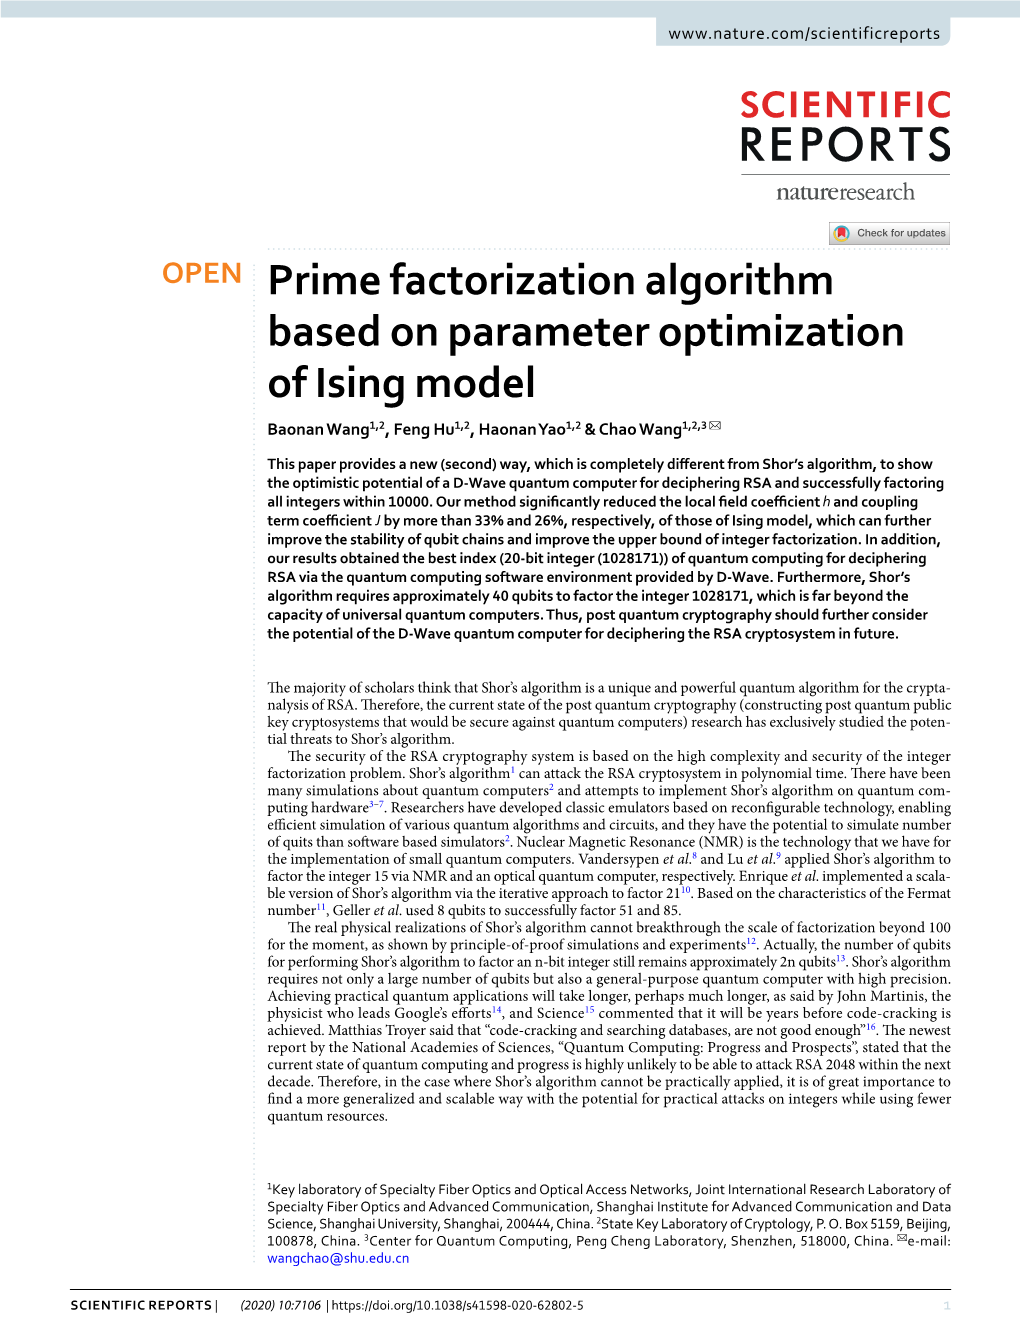 Prime Factorization Algorithm Based on Parameter Optimization of Ising Model Baonan Wang1,2, Feng Hu1,2, Haonan Yao1,2 & Chao Wang1,2,3 ✉